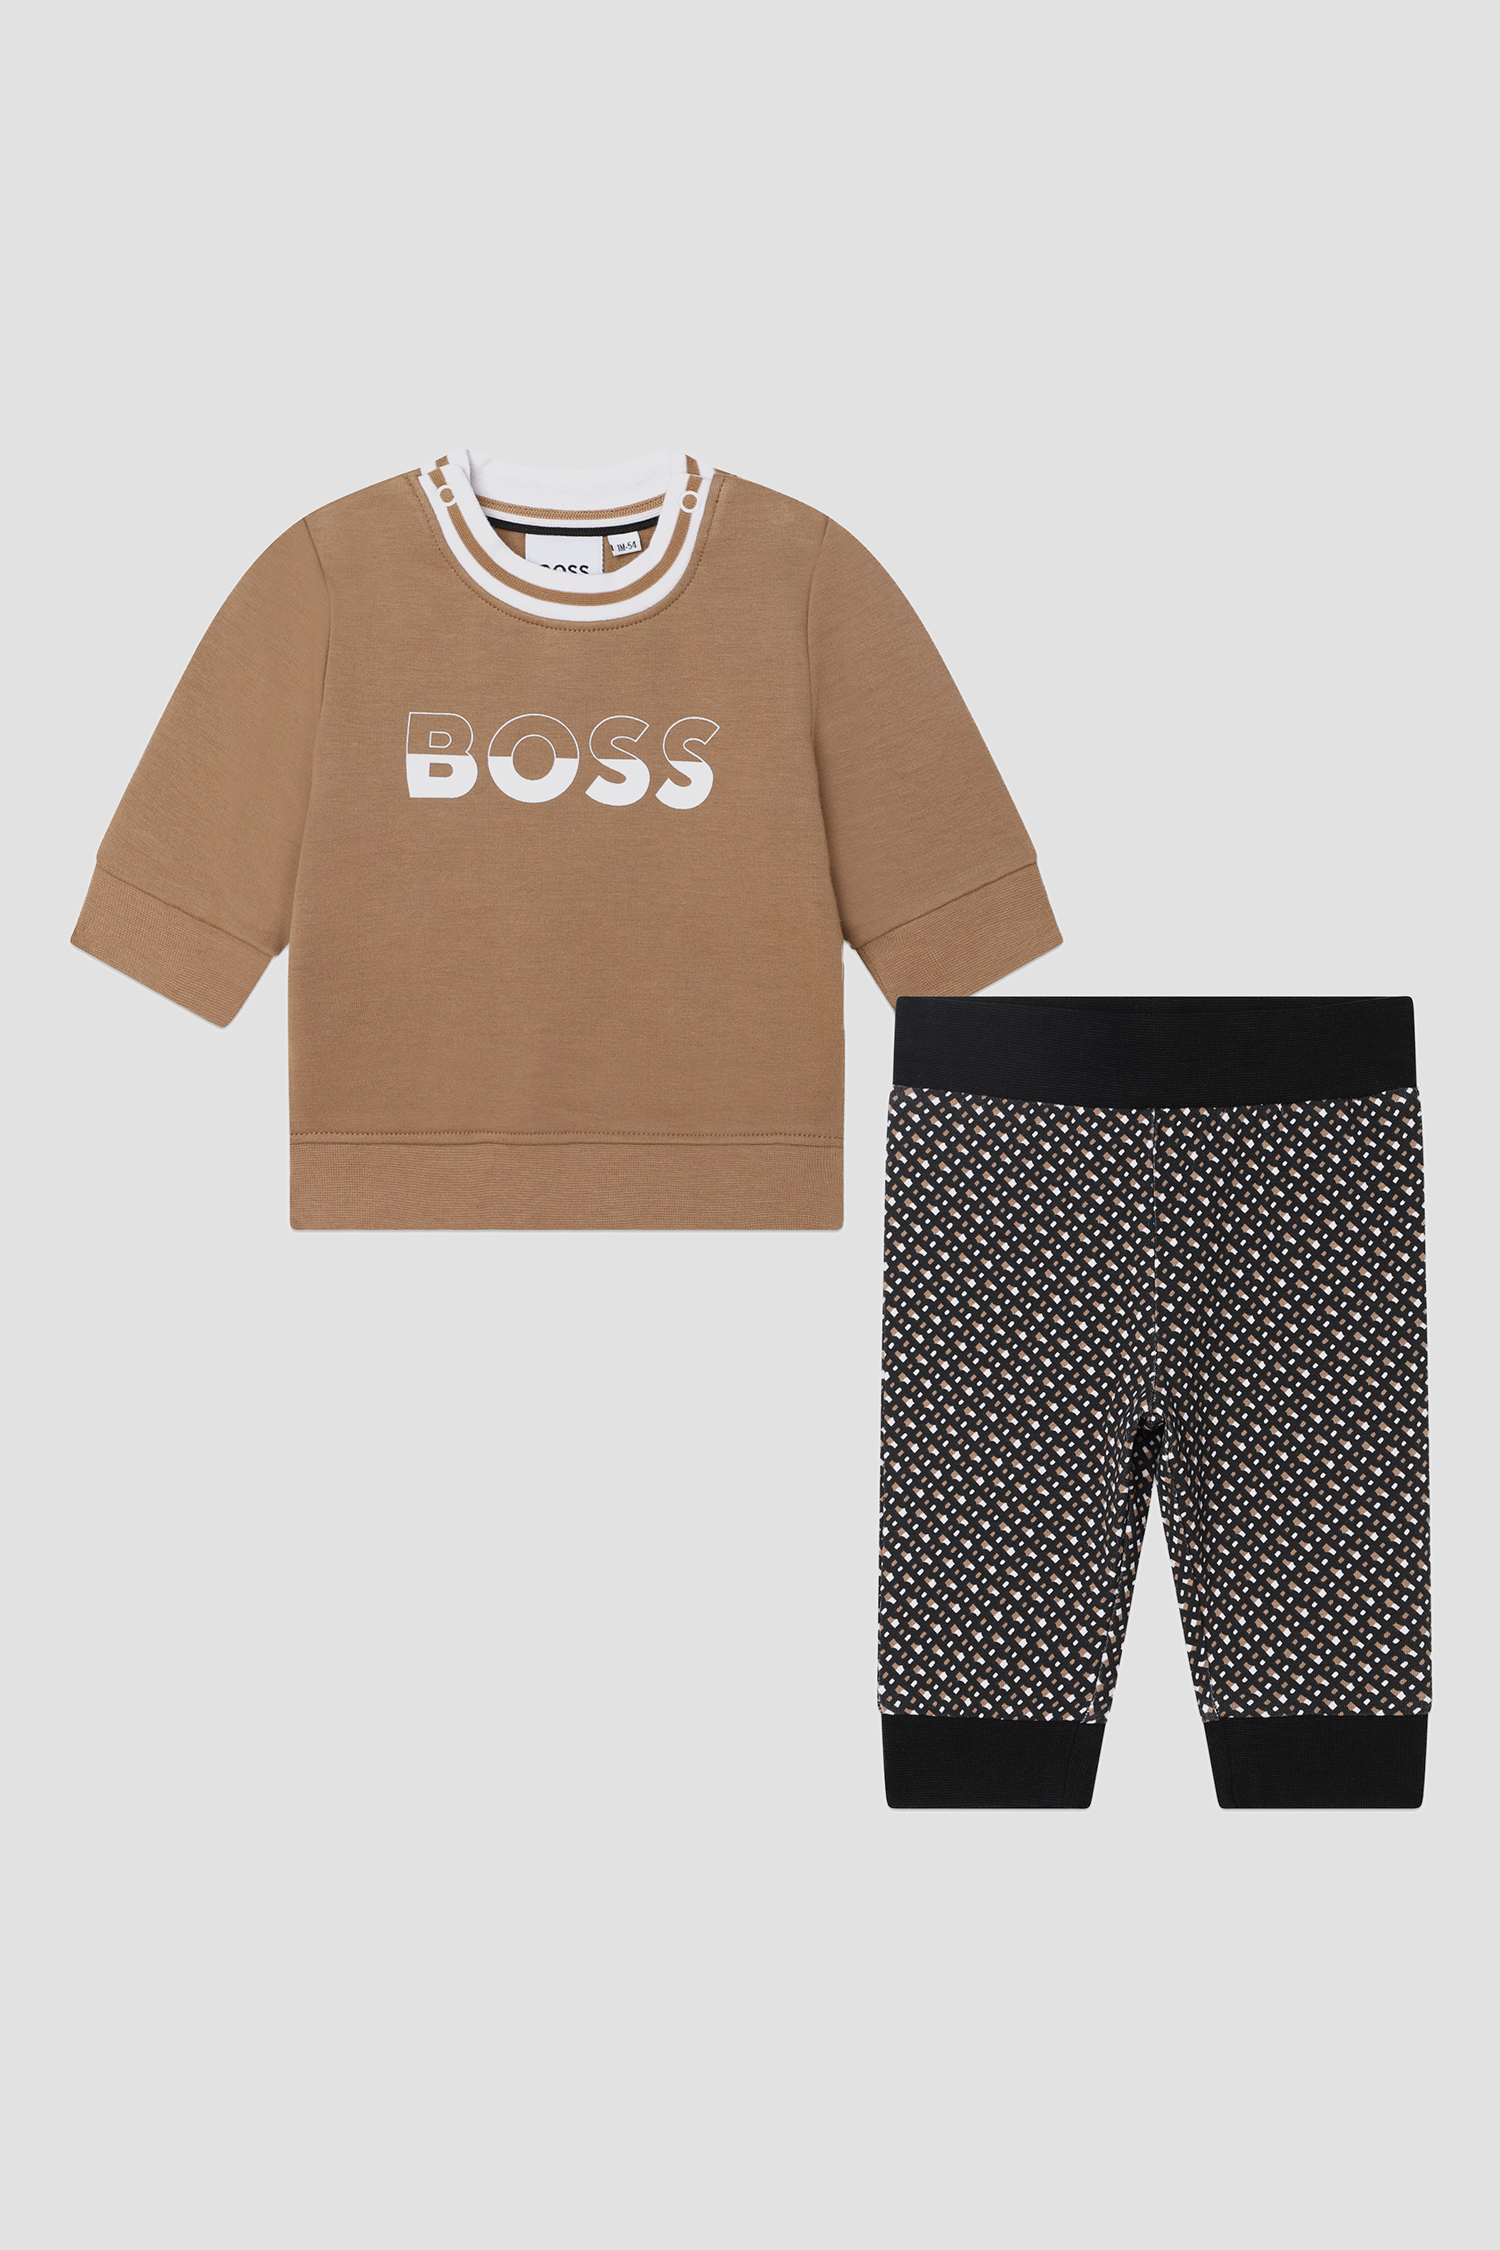 Детский комплект одежды (свитшот, брюки) BOSS kids J98446;269